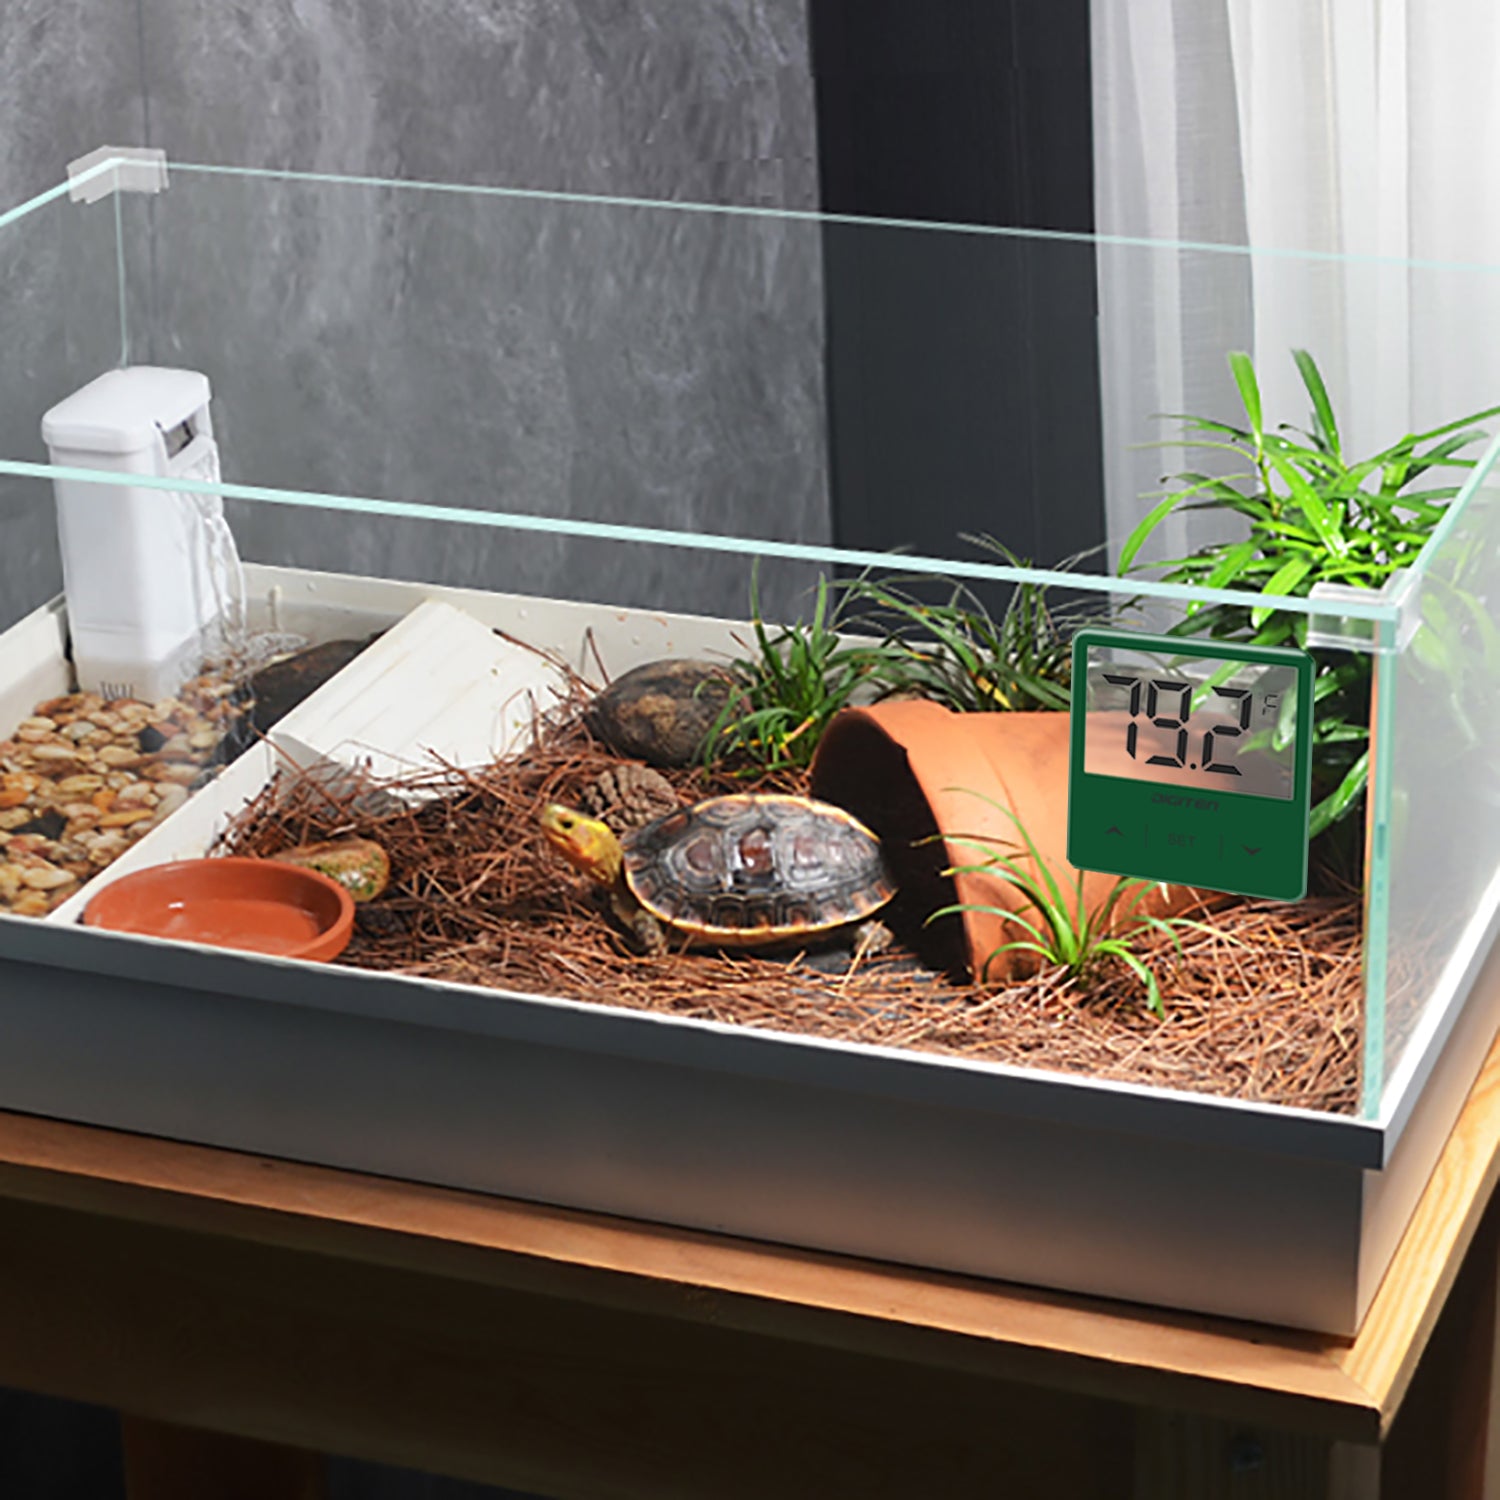 LCD Digital Fish Tank Reptile Aquarium Water Meter Thermometer